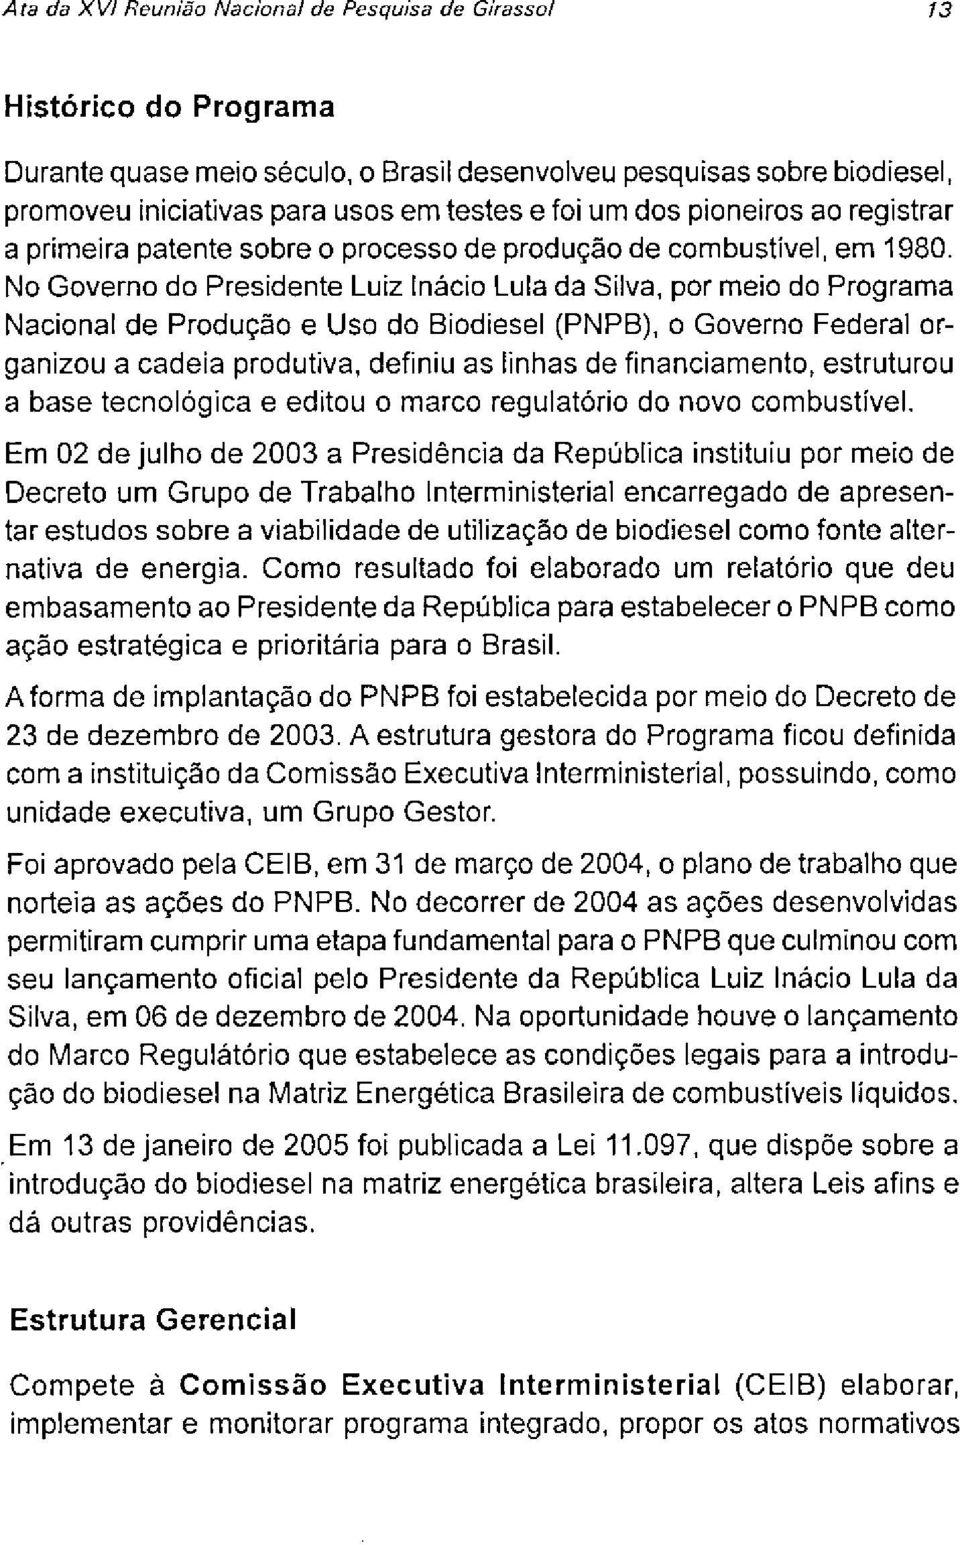 No Governo do Presidente Luiz Inácio Lula da Silva, por meio do Programa Nacional de Produção e Uso do Biodiesel (PNPB), o Governo Federal organizou a cadeia produtiva, definiu as linhas de